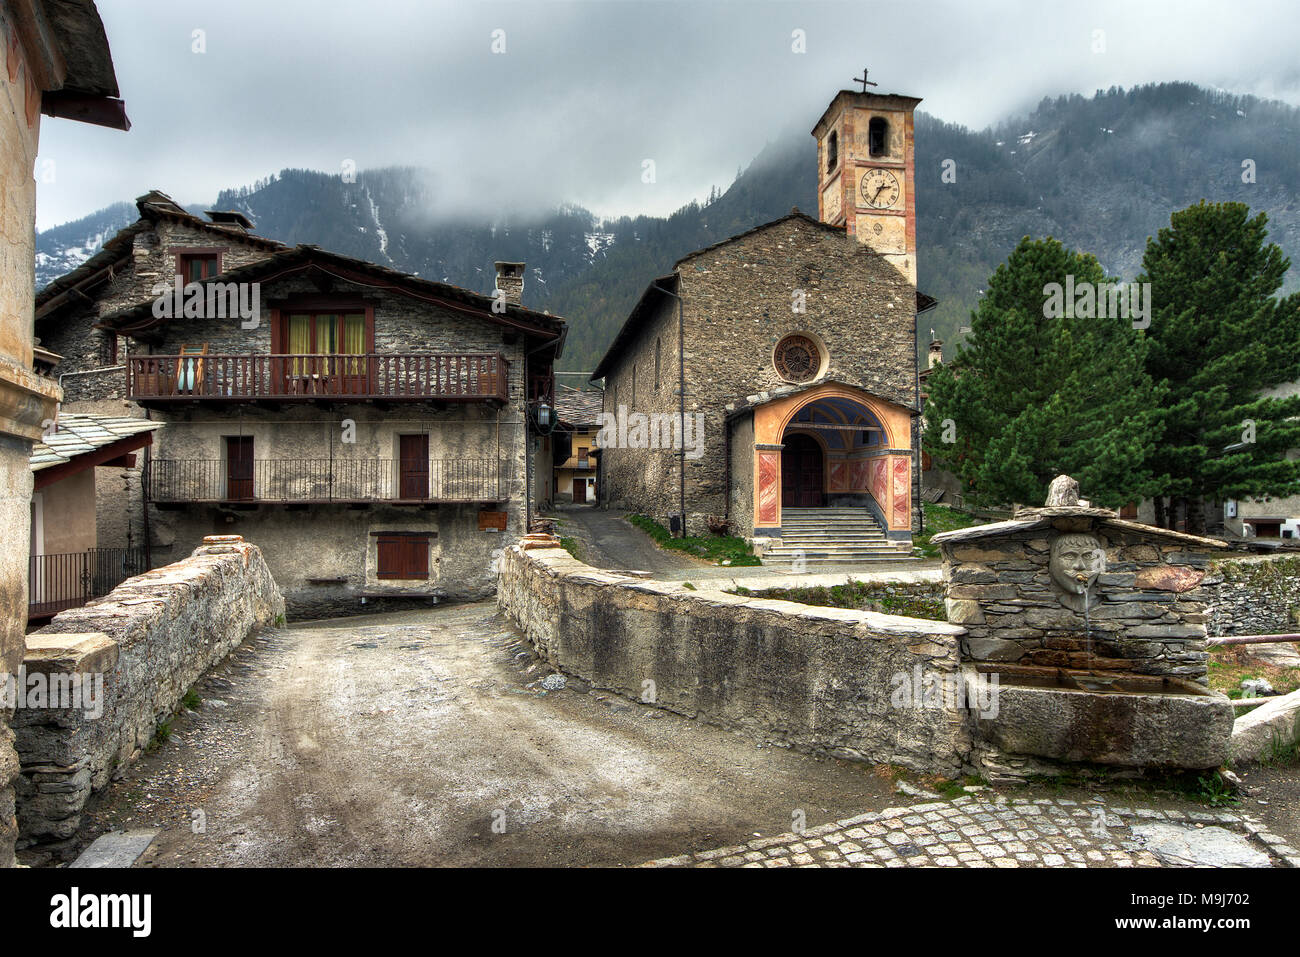 Il borgo di Chianale è l'ultimo e più alto (1800 m slm) della Valle Varaita, Italia. È sulla lista dei borghi più belli d'Italia. Foto Stock